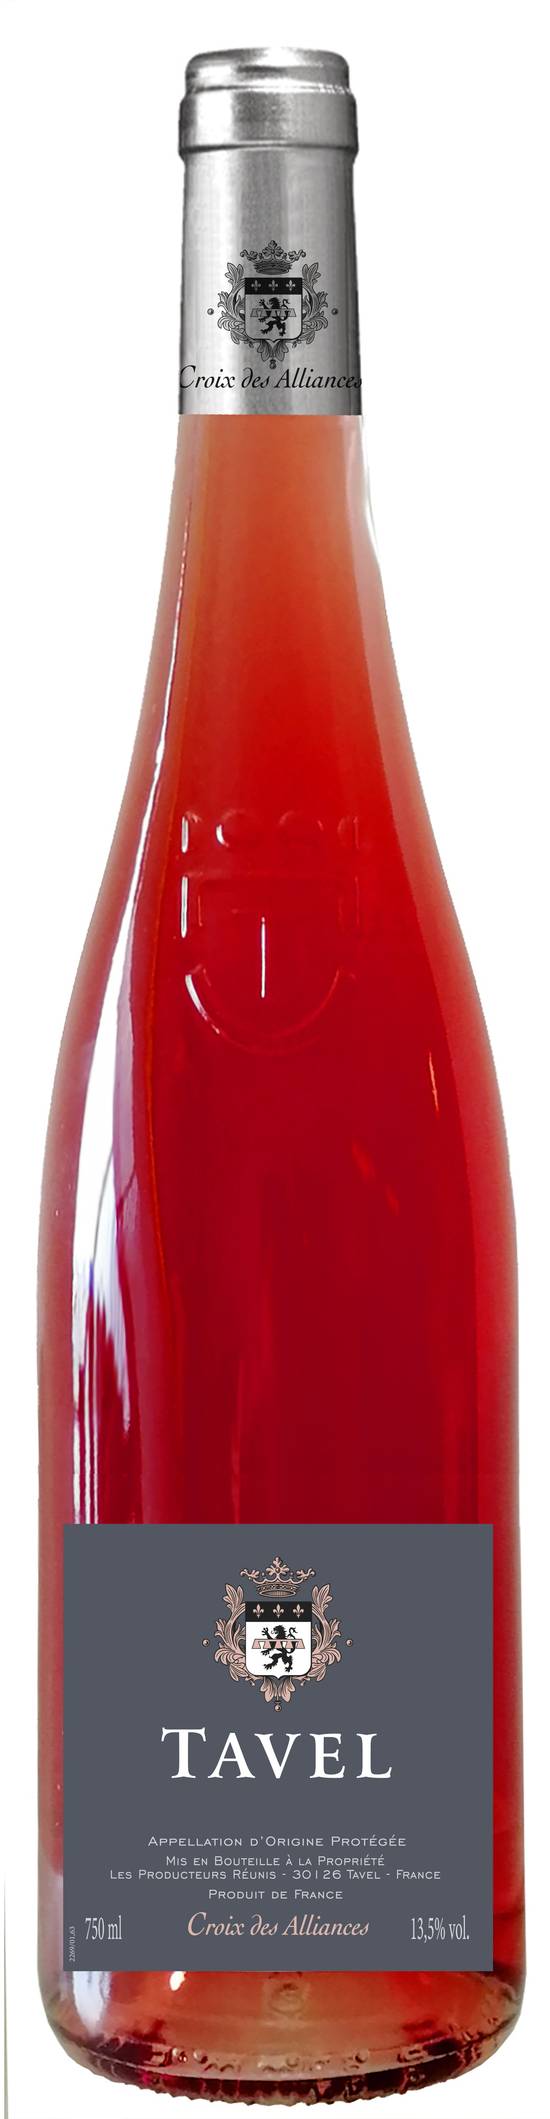 U - Vin rosé AOC tavel les hauts de mélaine (750 ml)